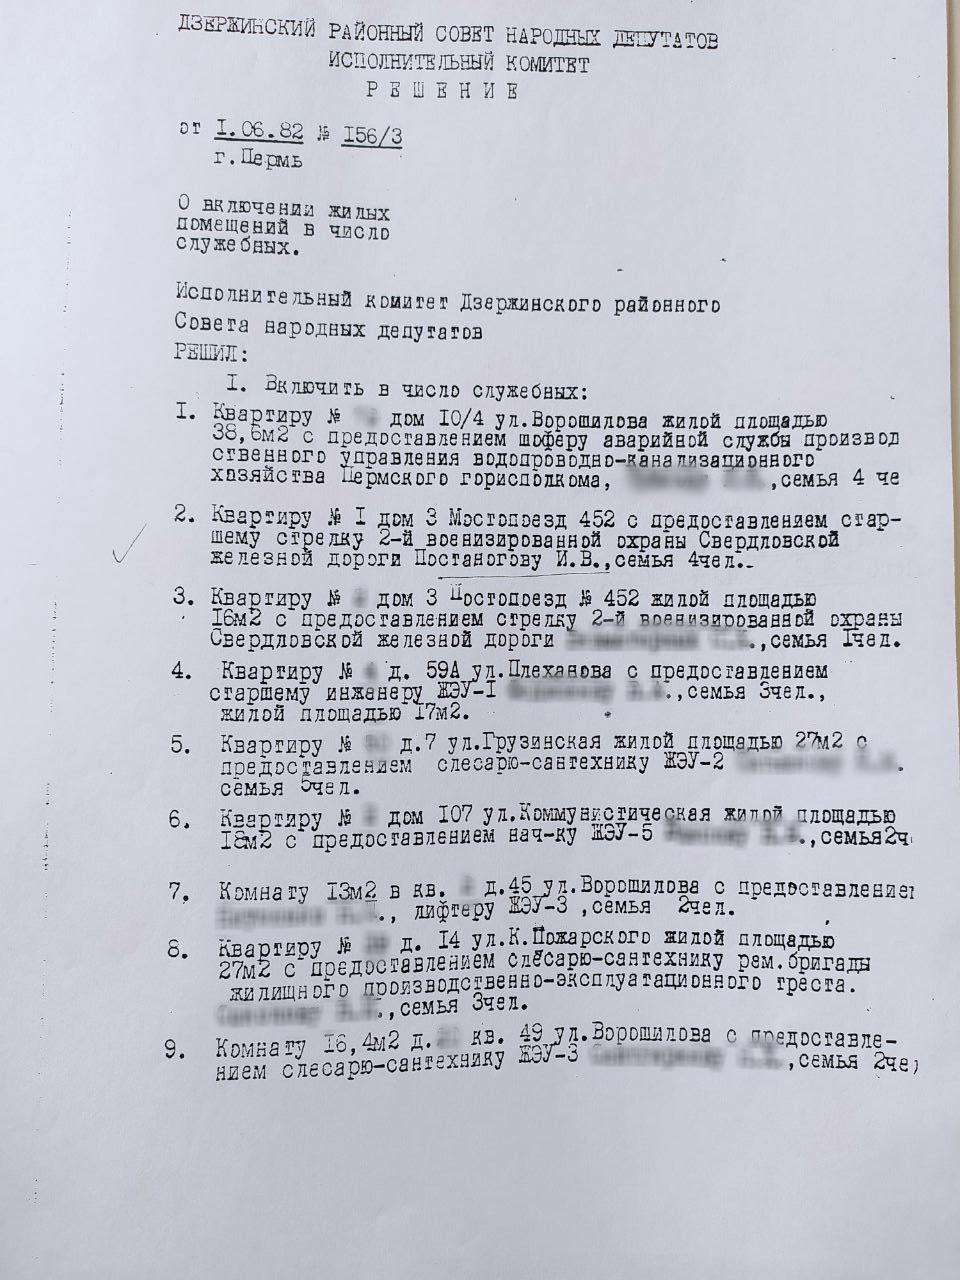 А это решение Исполнительного комитета Дзержинского районного совета народных депутатов о предоставлении жилья